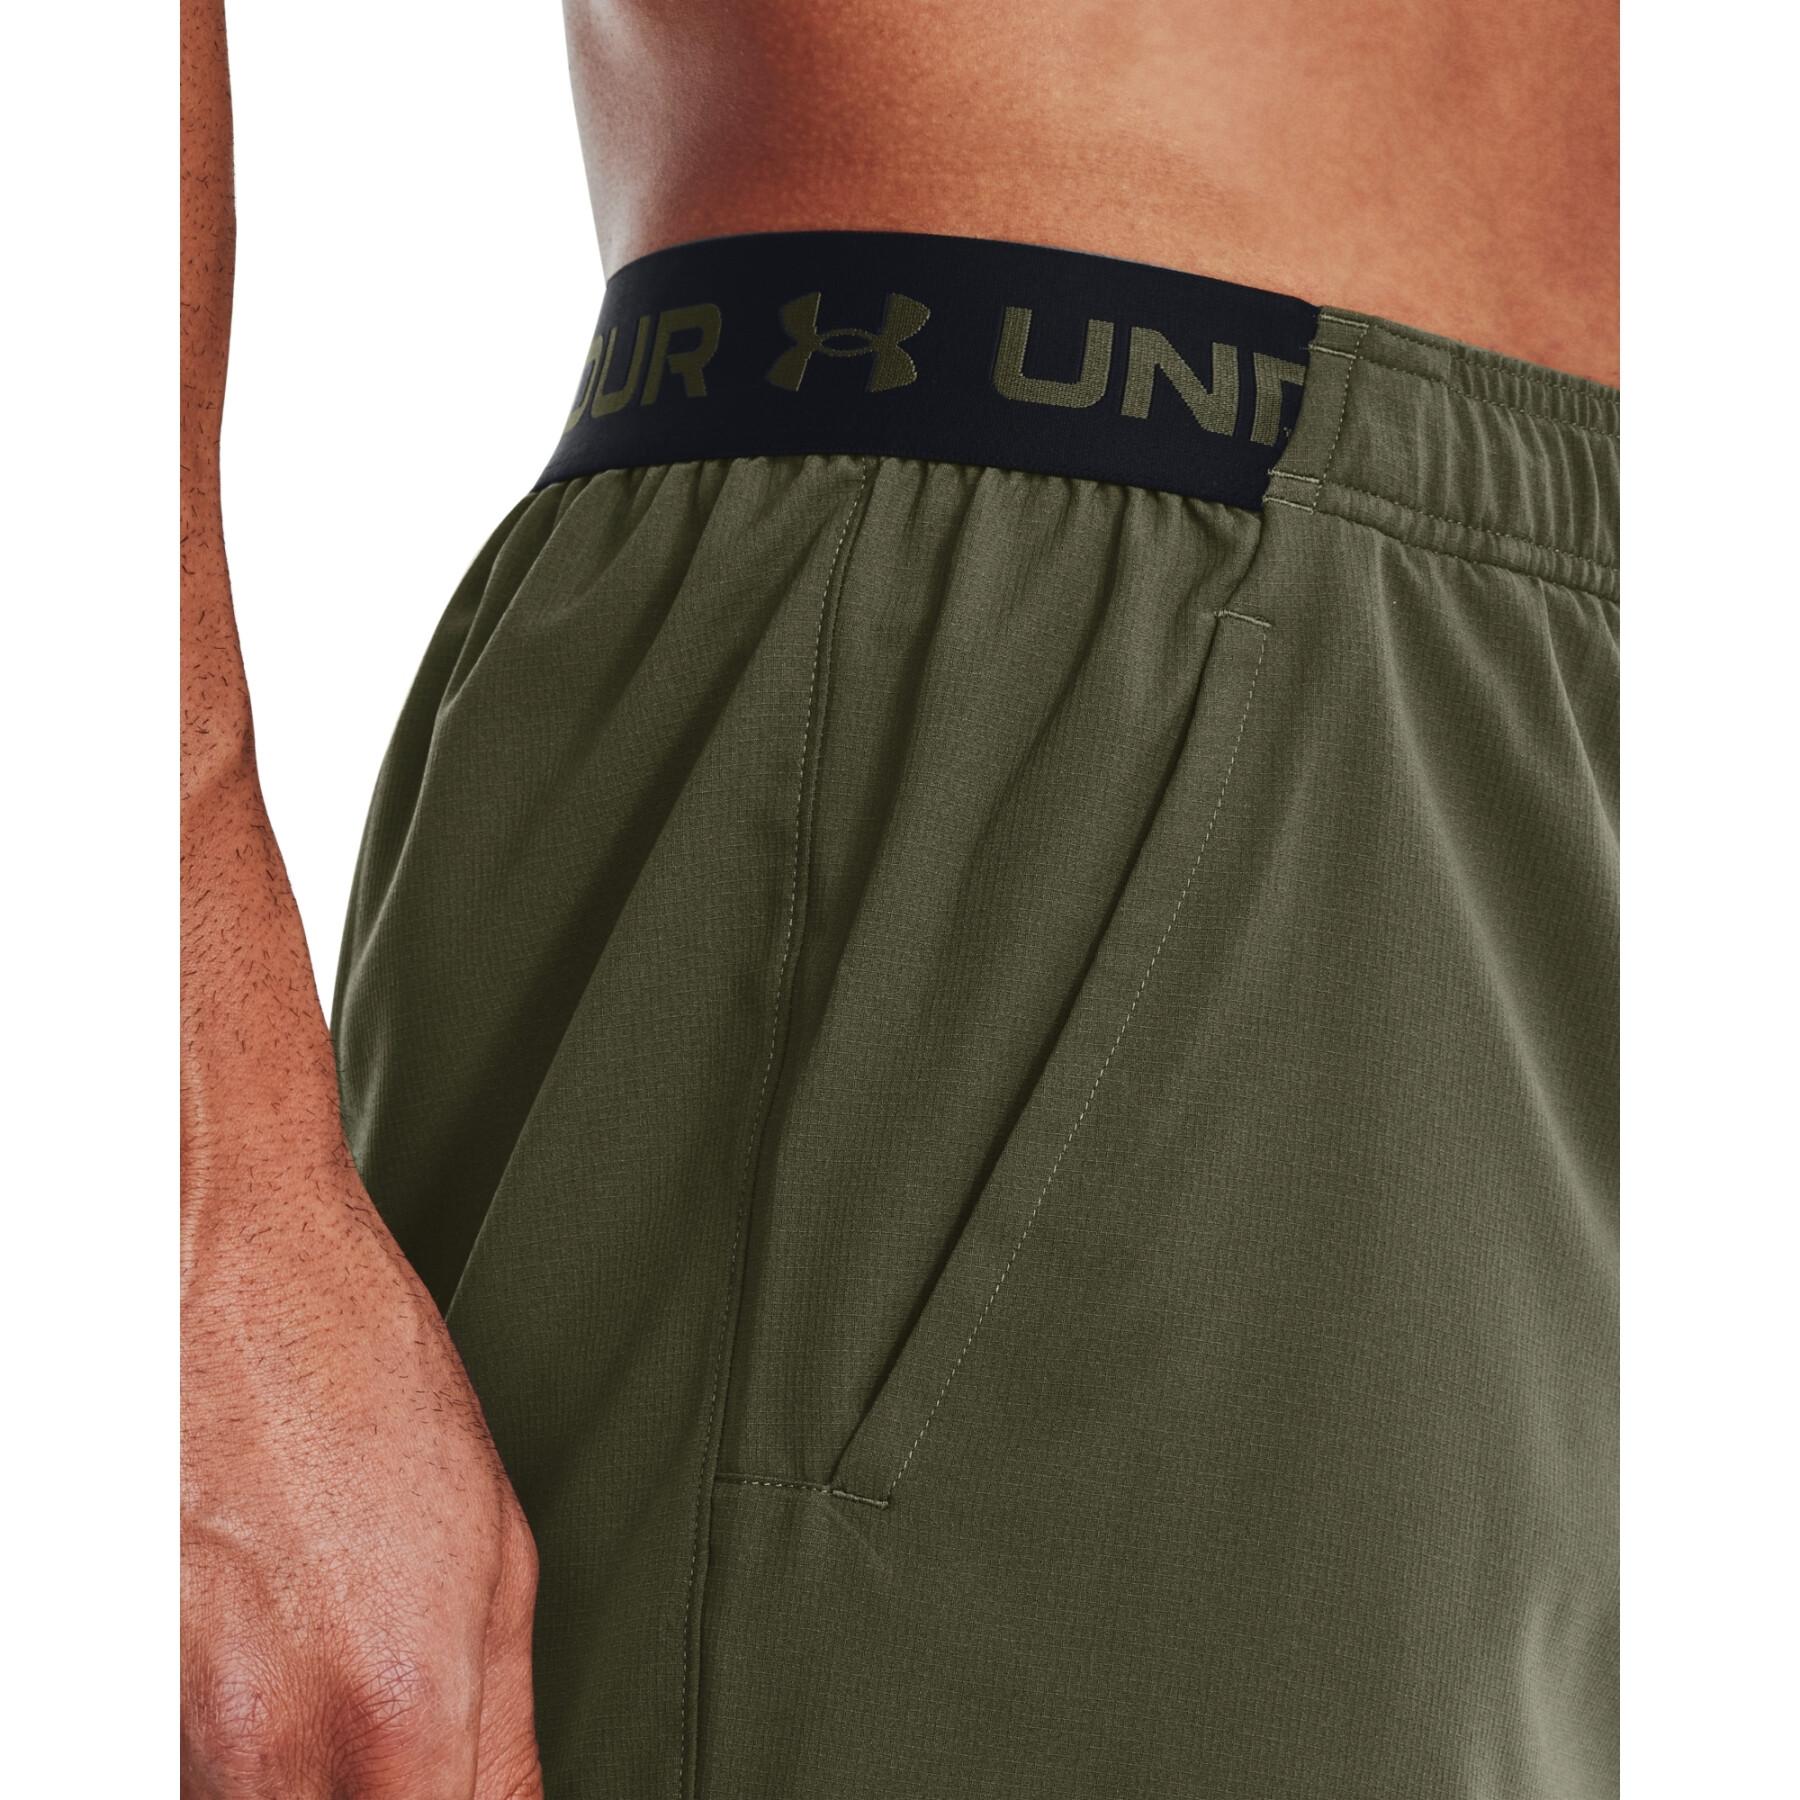 Pantalón corto tejidos Under Armour Vanish 26 cm